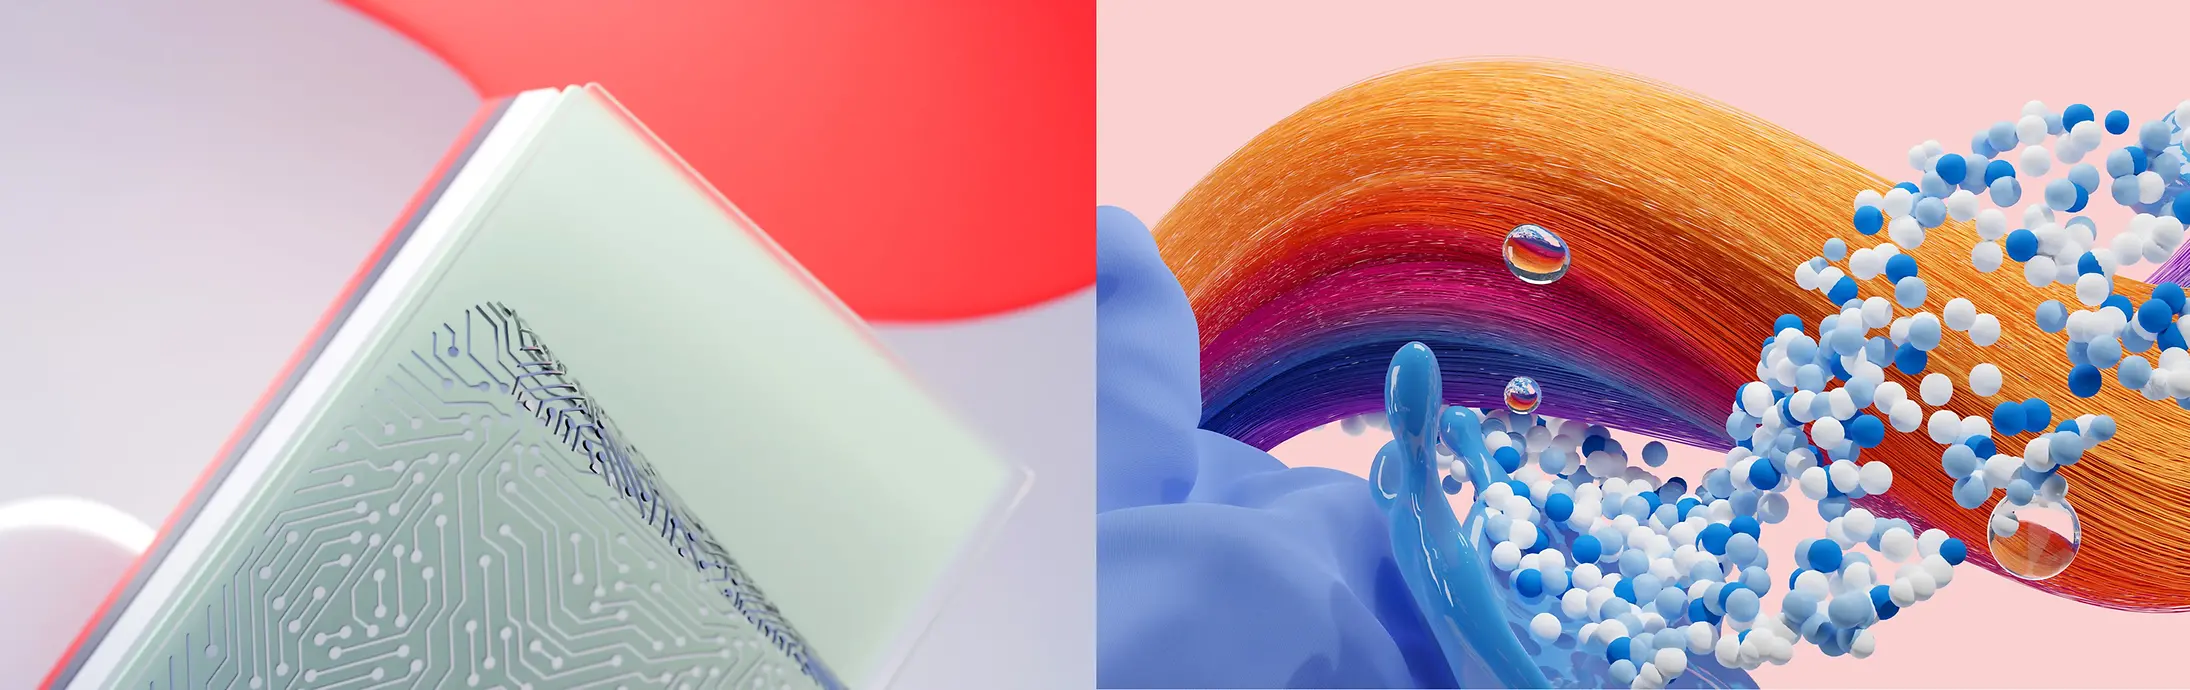 Abstraktný obrázok, ktorý znázorňuje obchodné divízie spoločnosti Henkel: Adhesive Technologies, Consumer Brands.